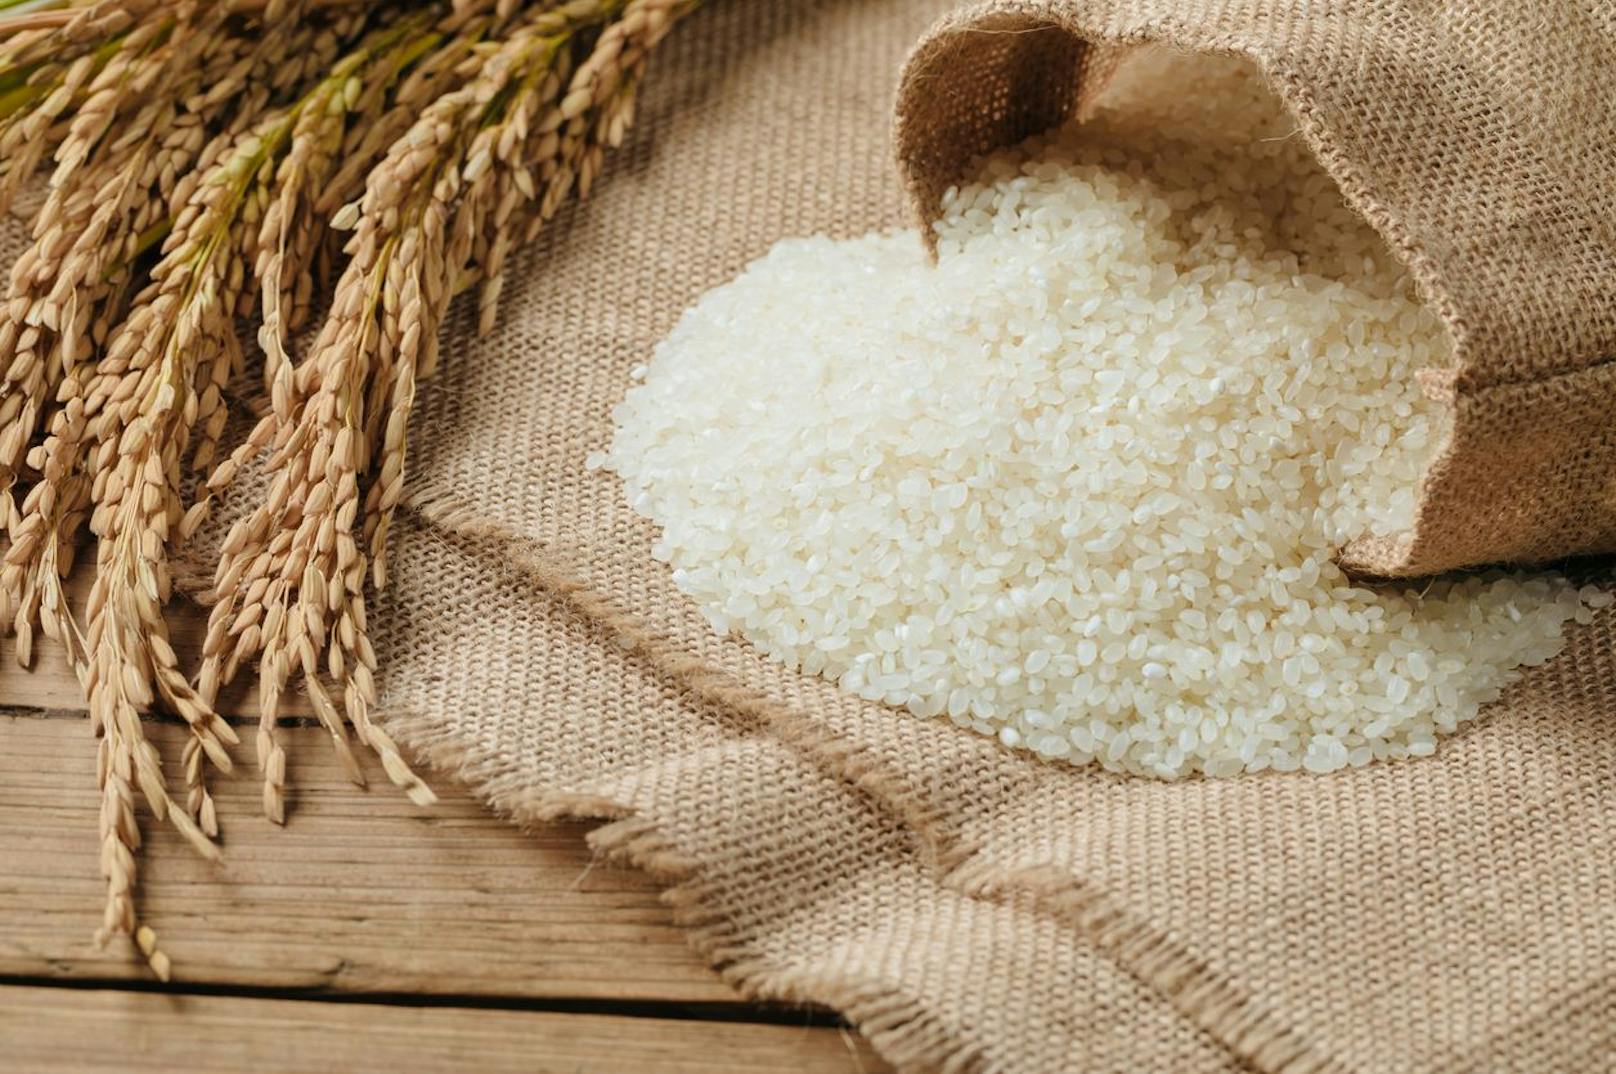 Vollkornreis statt geschliffenem Reis? Ja, bitte! Im Vollkornreis sind noch genügend Ballaststoffe, Vitamine und Mineralstoffe enthalten, die dem weißen Reis entzogen werden.